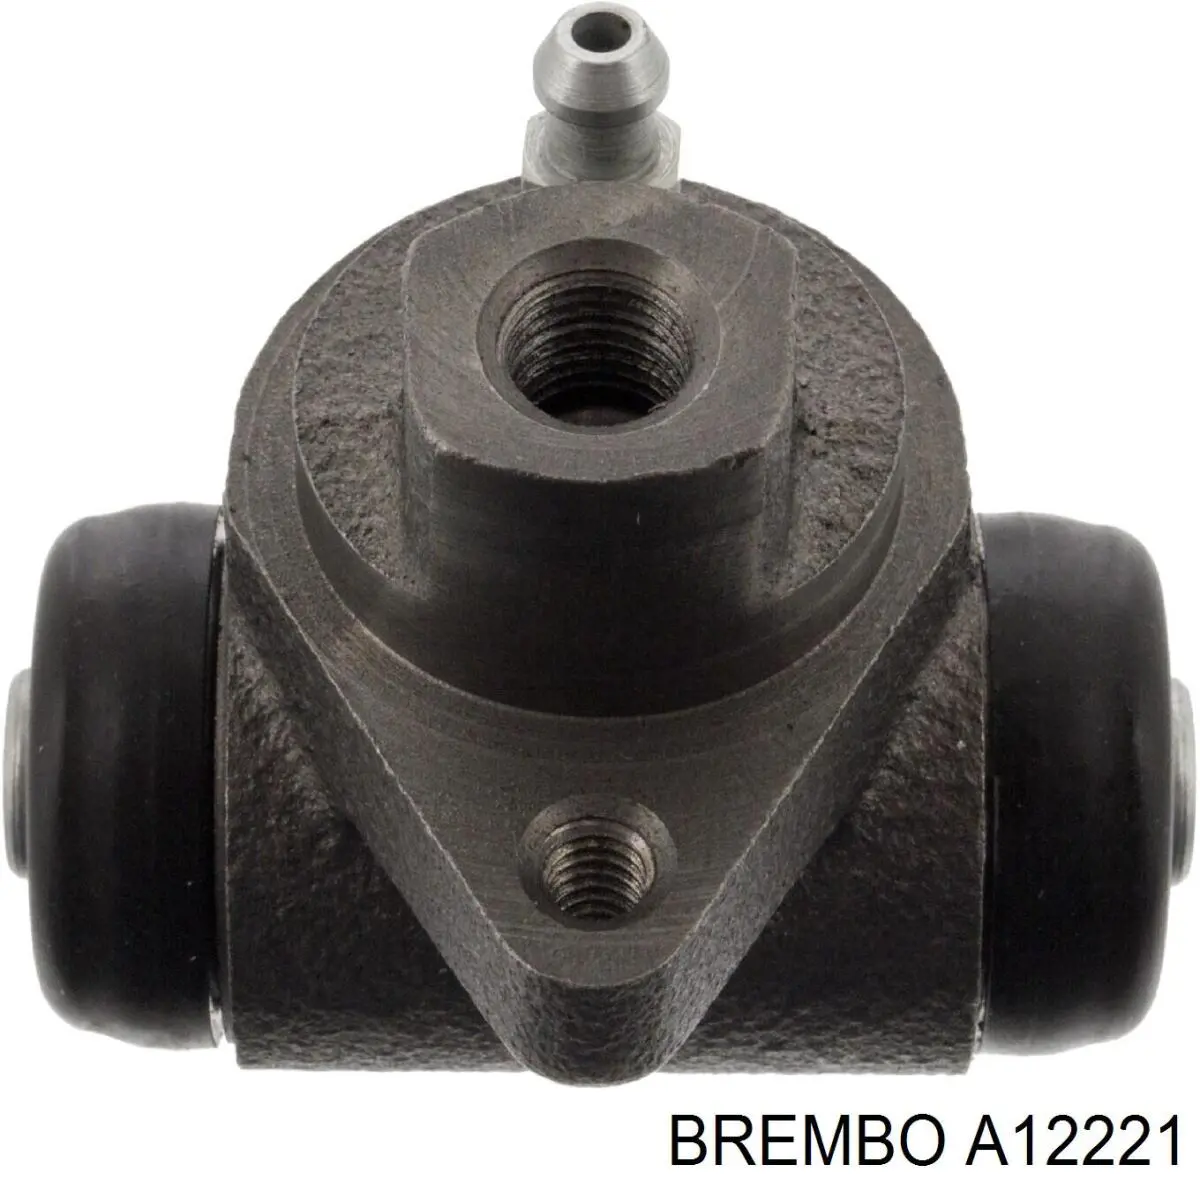 A12221 Brembo cilindro de freno de rueda trasero